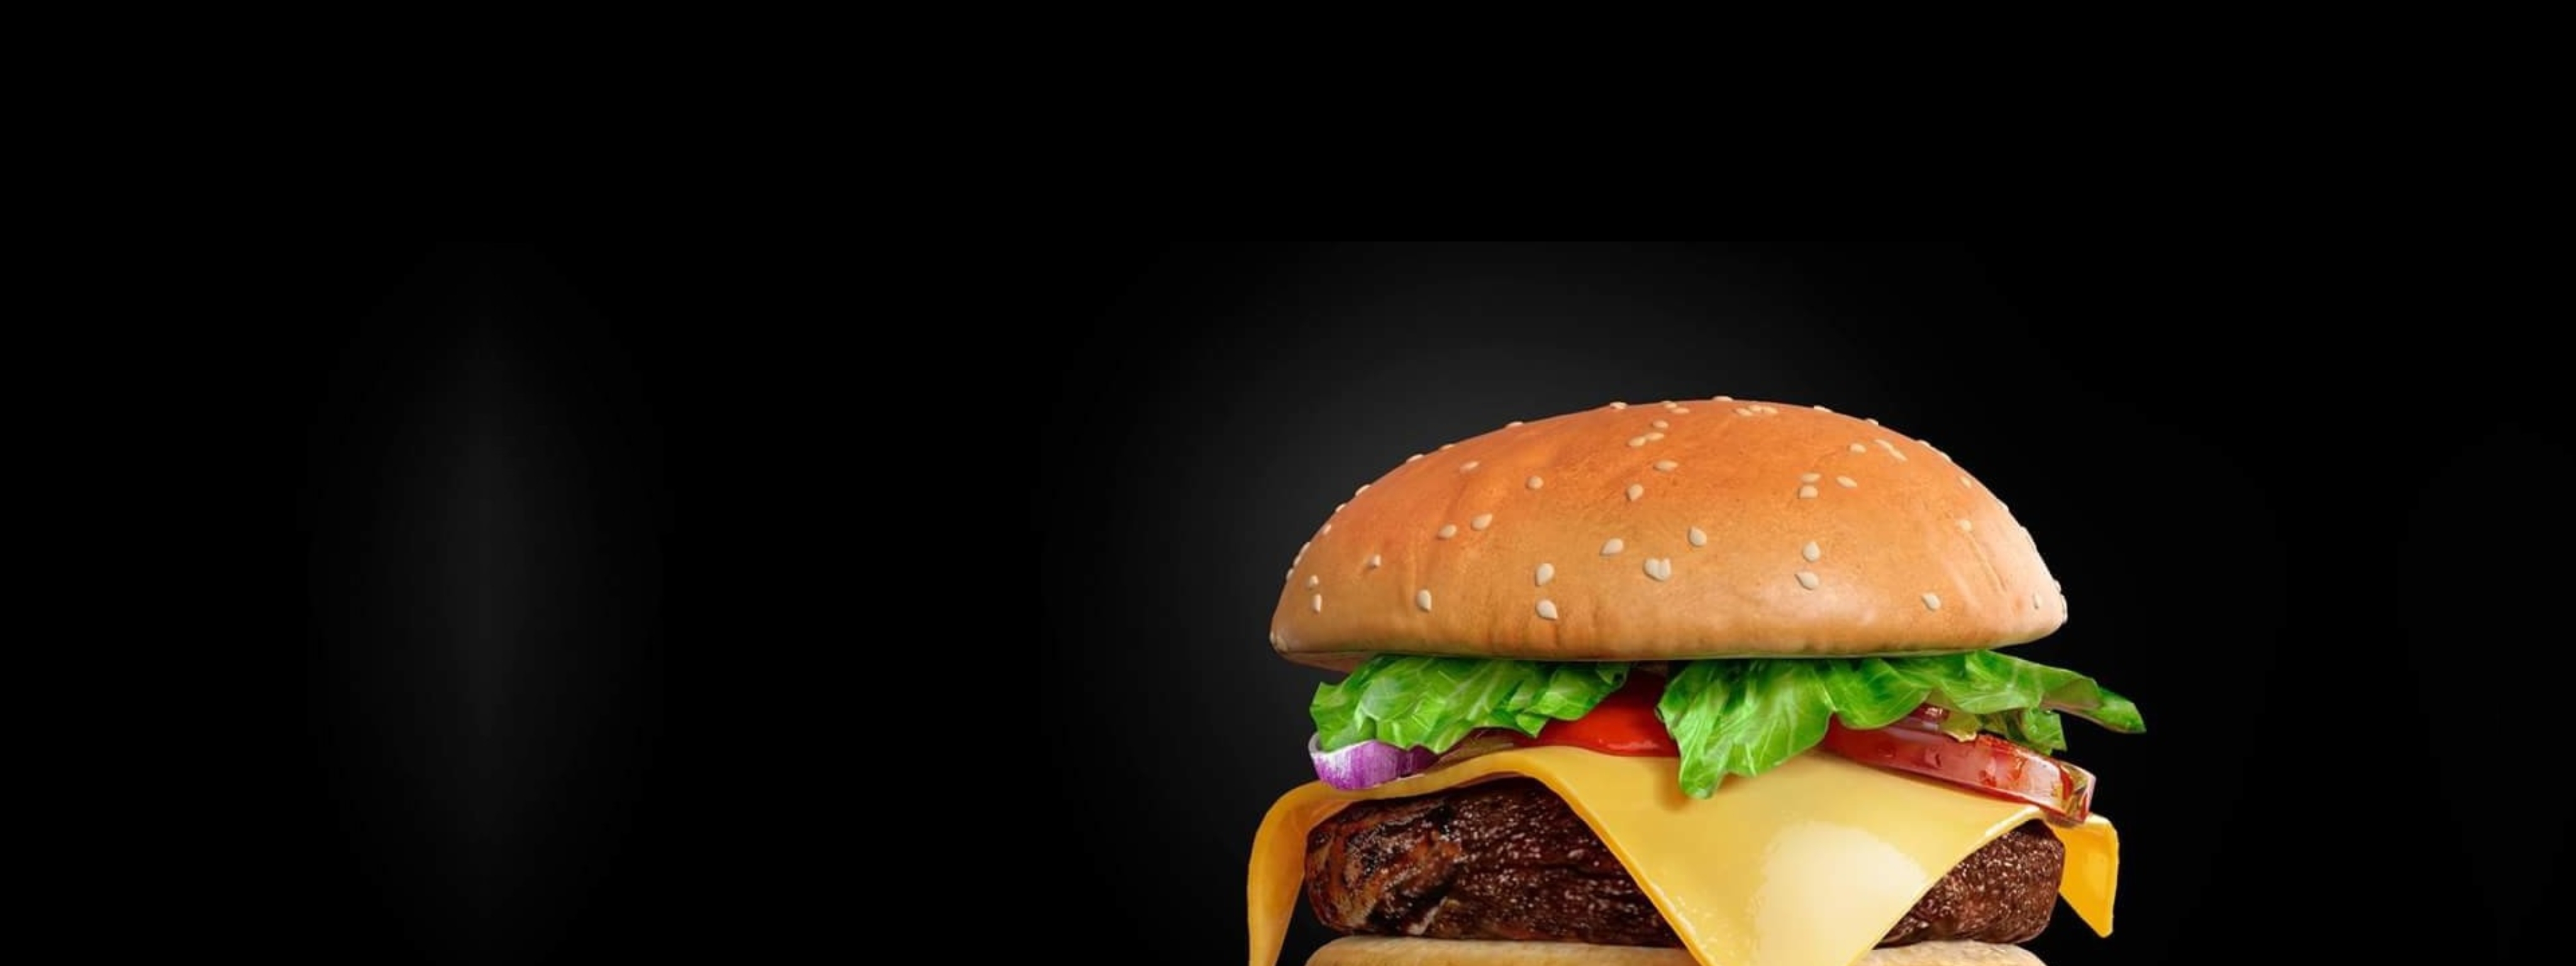 Фон фаст. Чизбургер на черном фоне. Бургеры на черном фоне. Красивый бургер. Гамбургер на черном фоне.